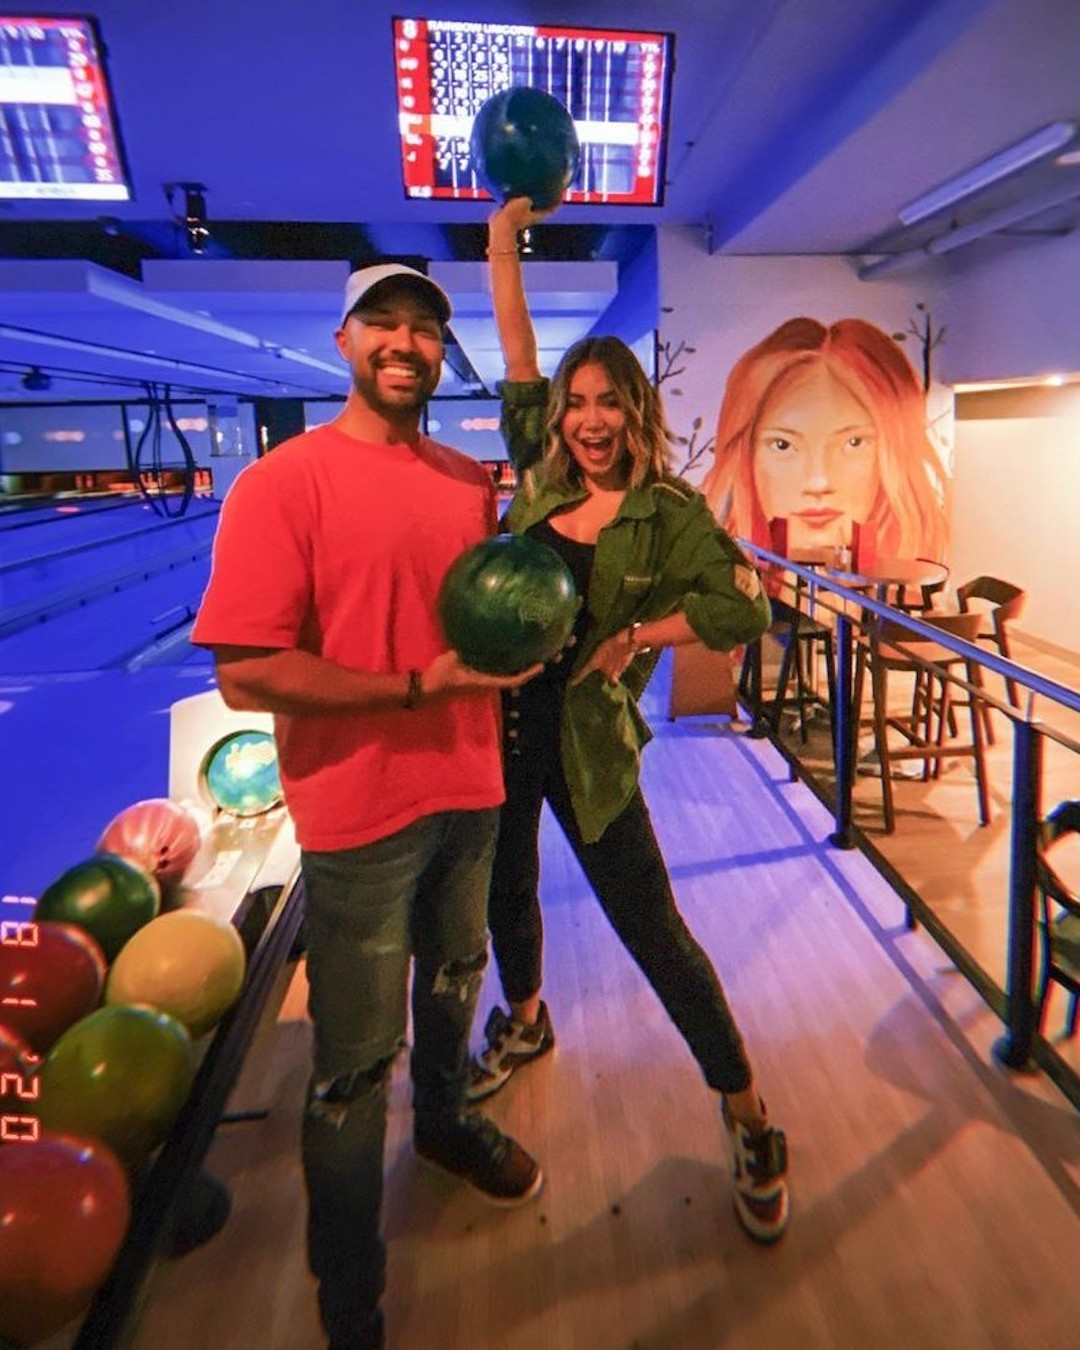 A couple bowling